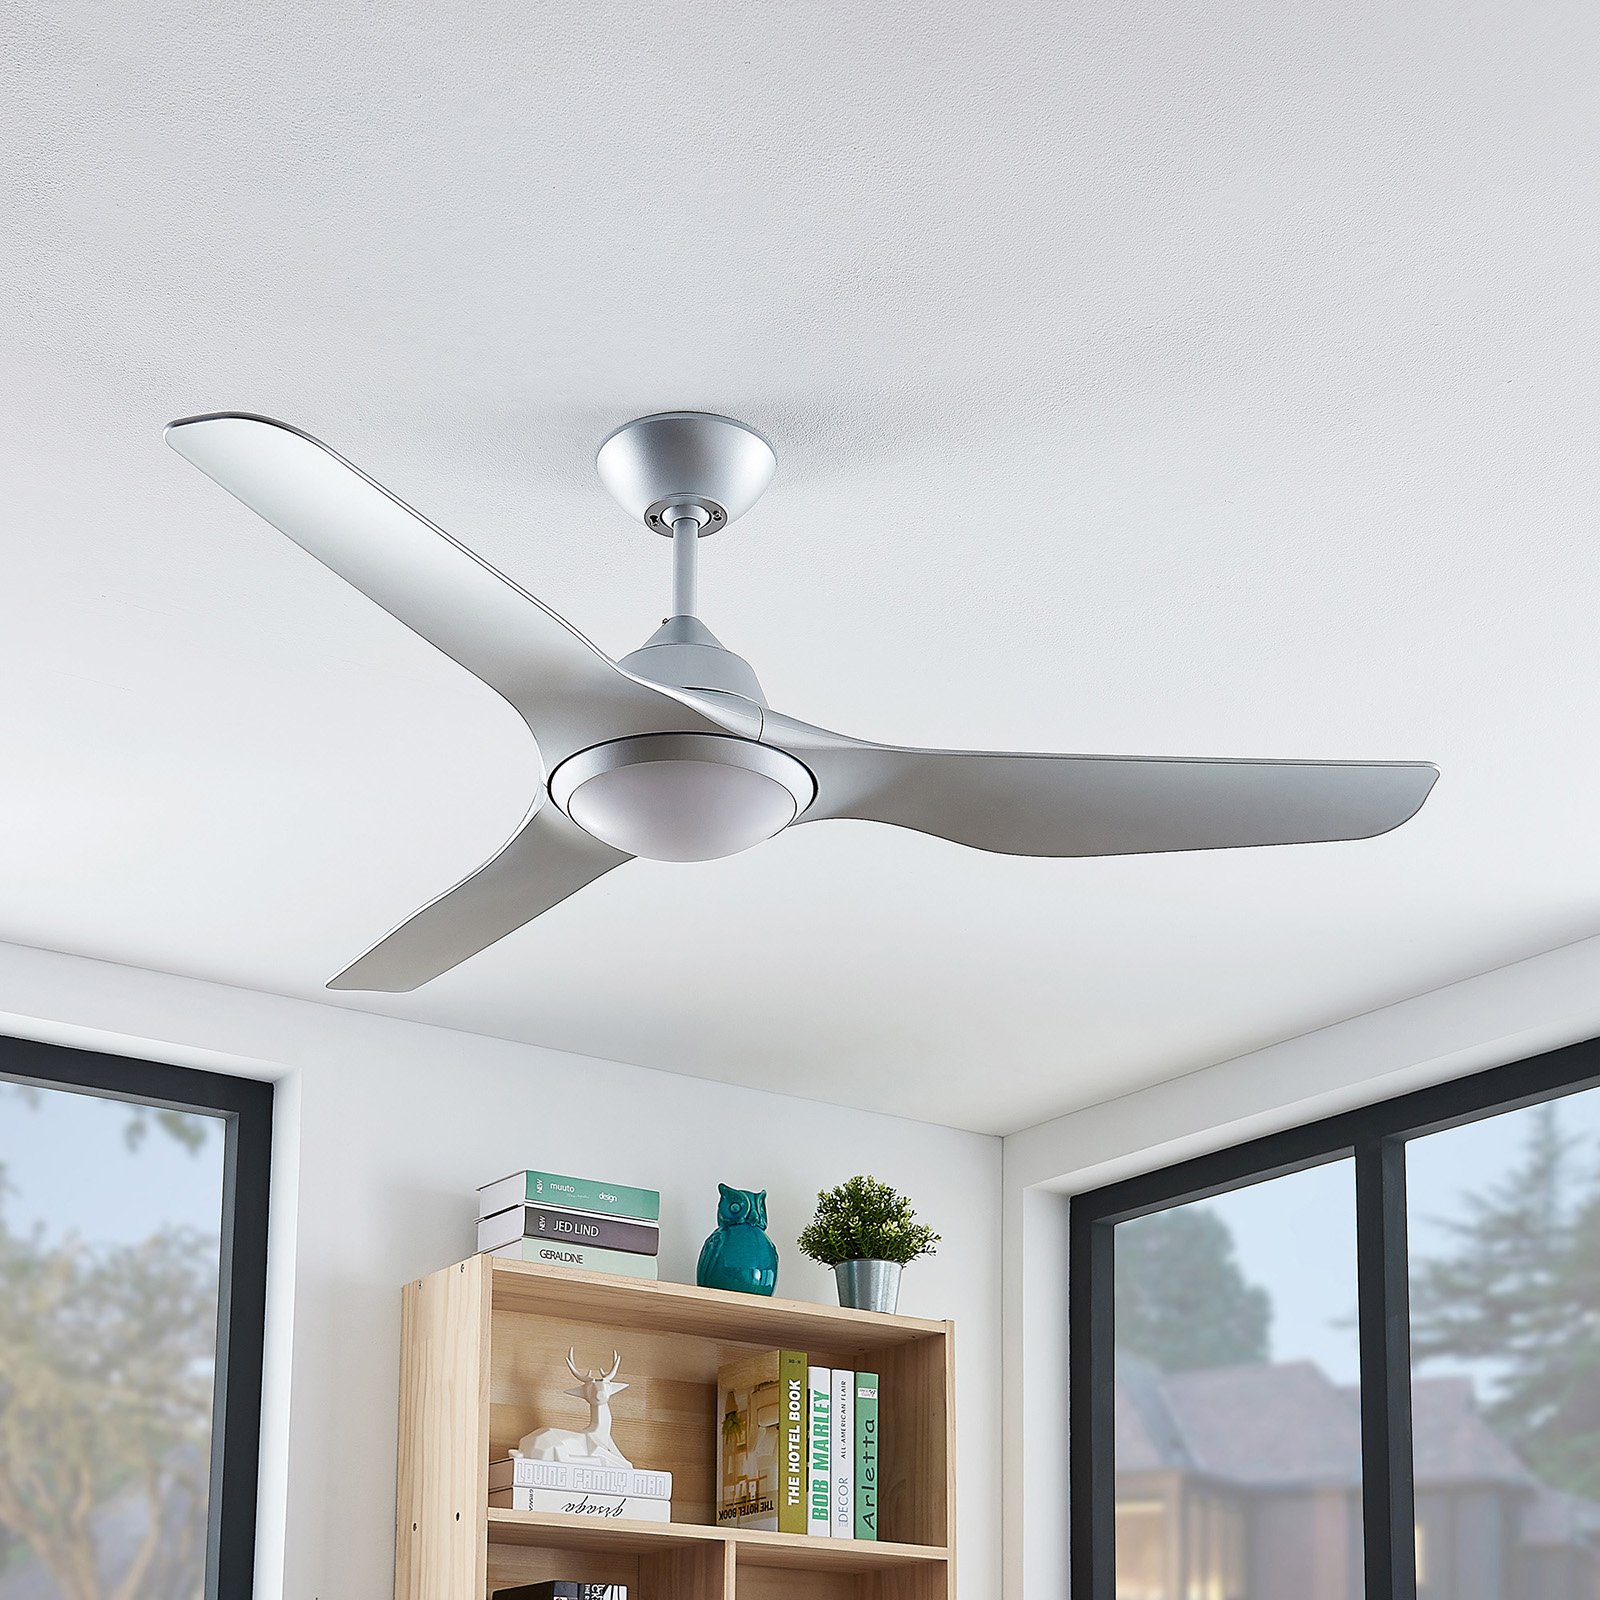 Starluna Pira LED ceiling fan, 3 blades silver